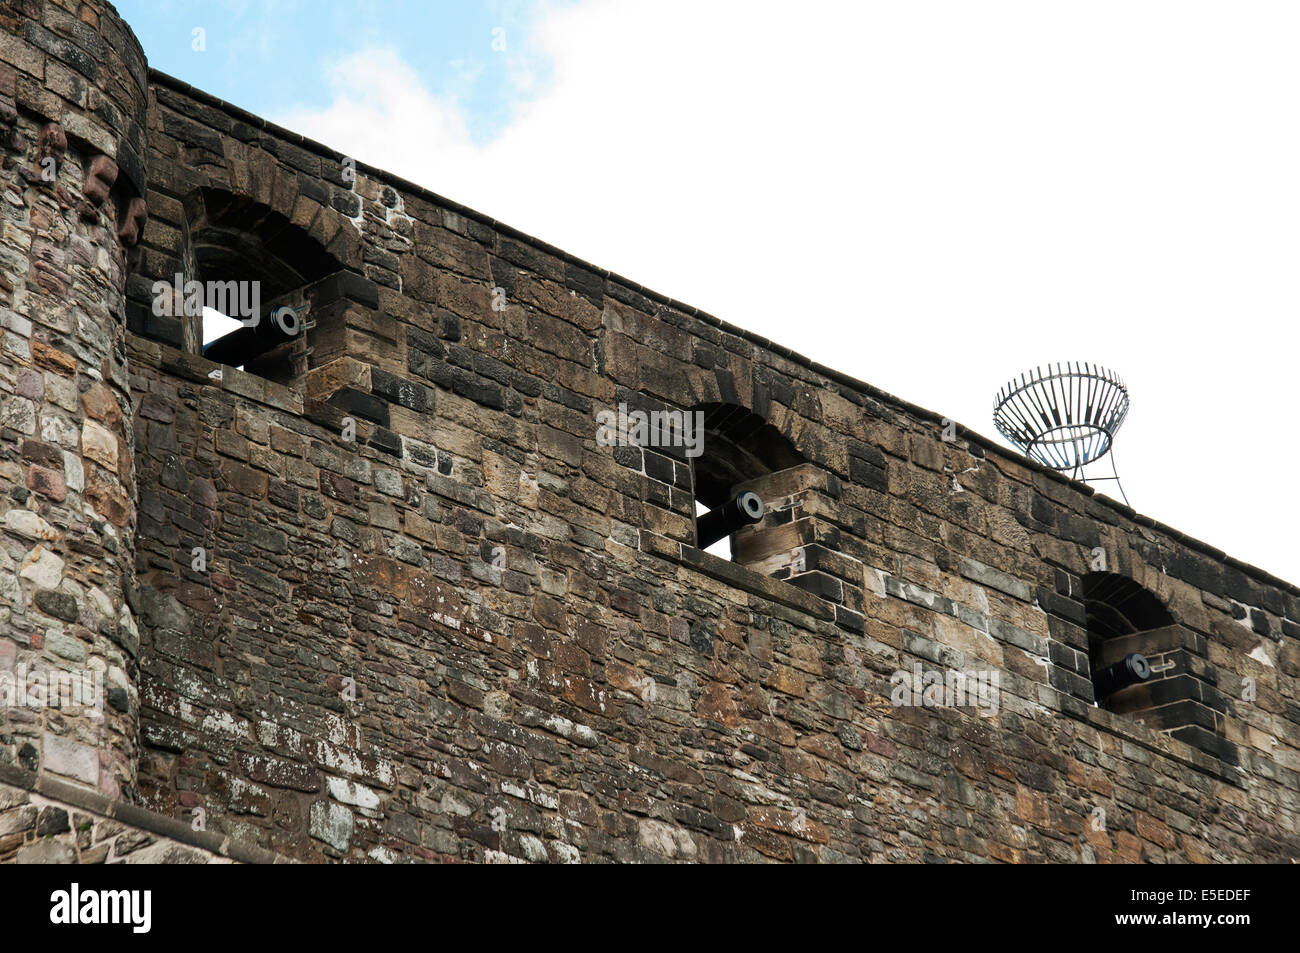 Canons à mur de pierre dans le château d'Edimbourg - Ecosse Banque D'Images